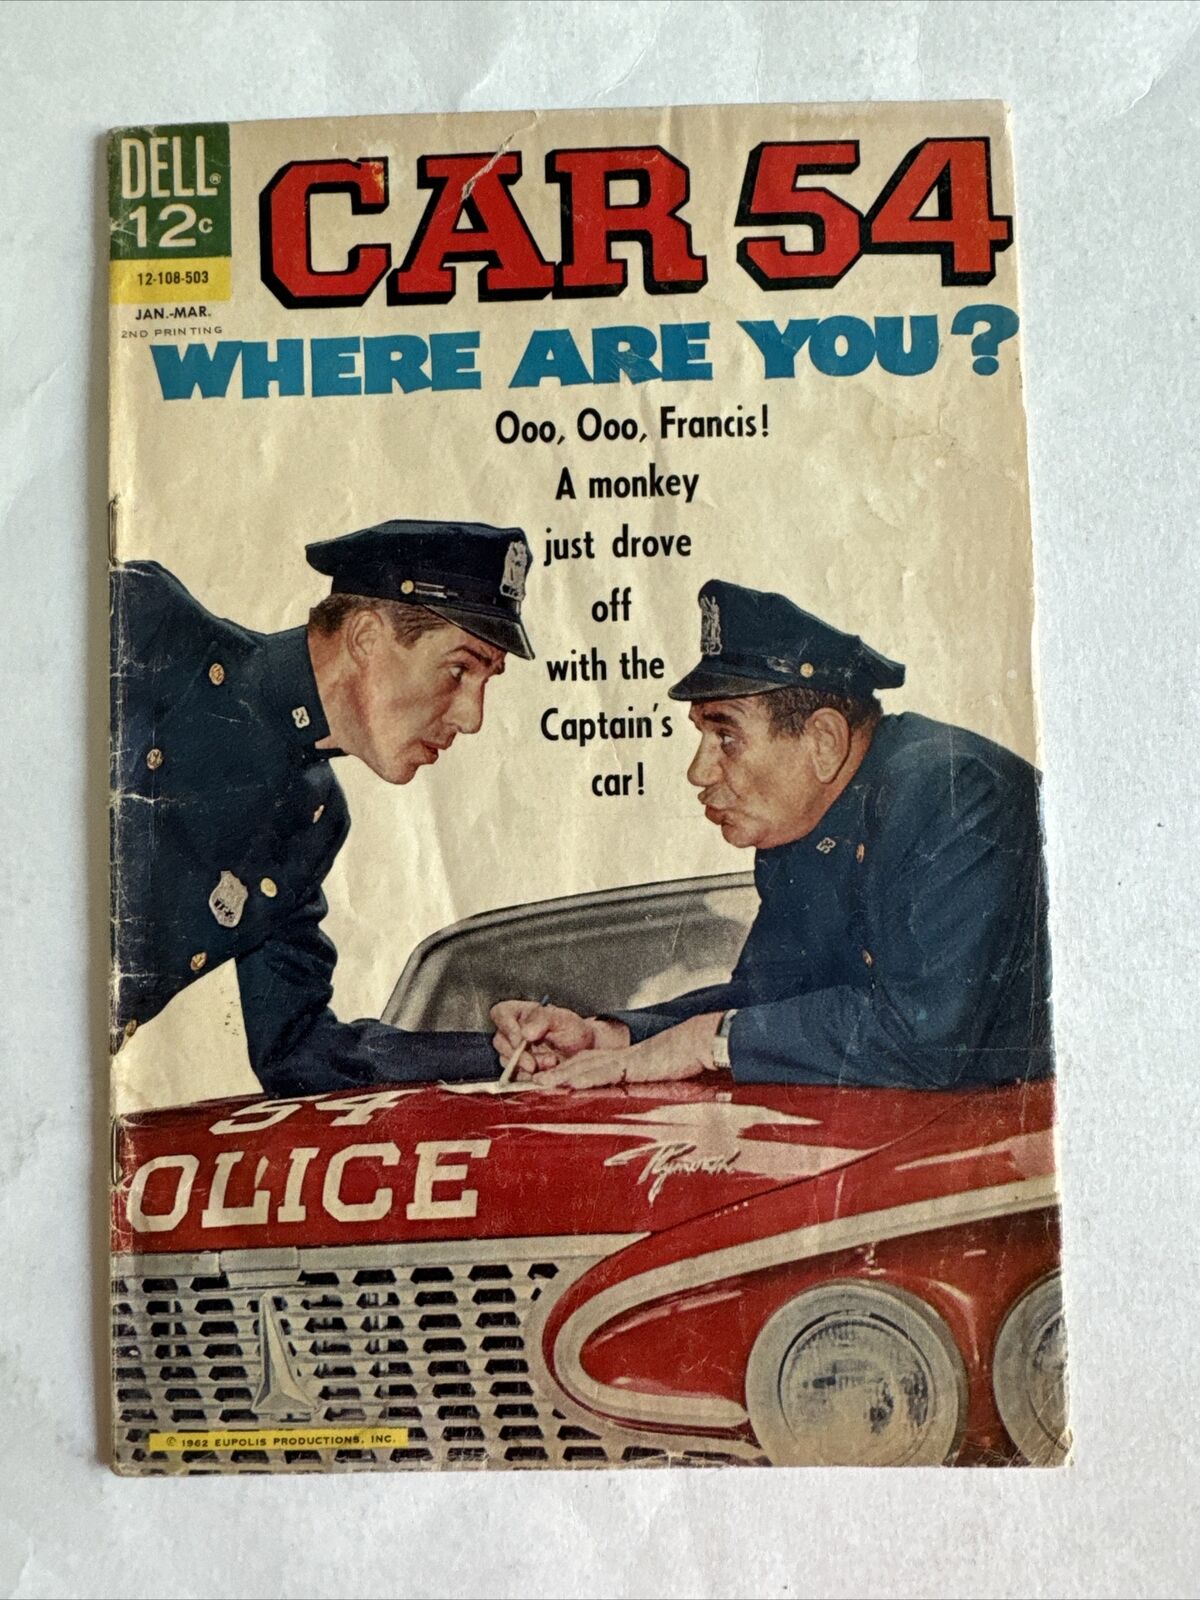 1965 #4 CAR 54 WHERE ARE YOU? DELL COMIC BOOK